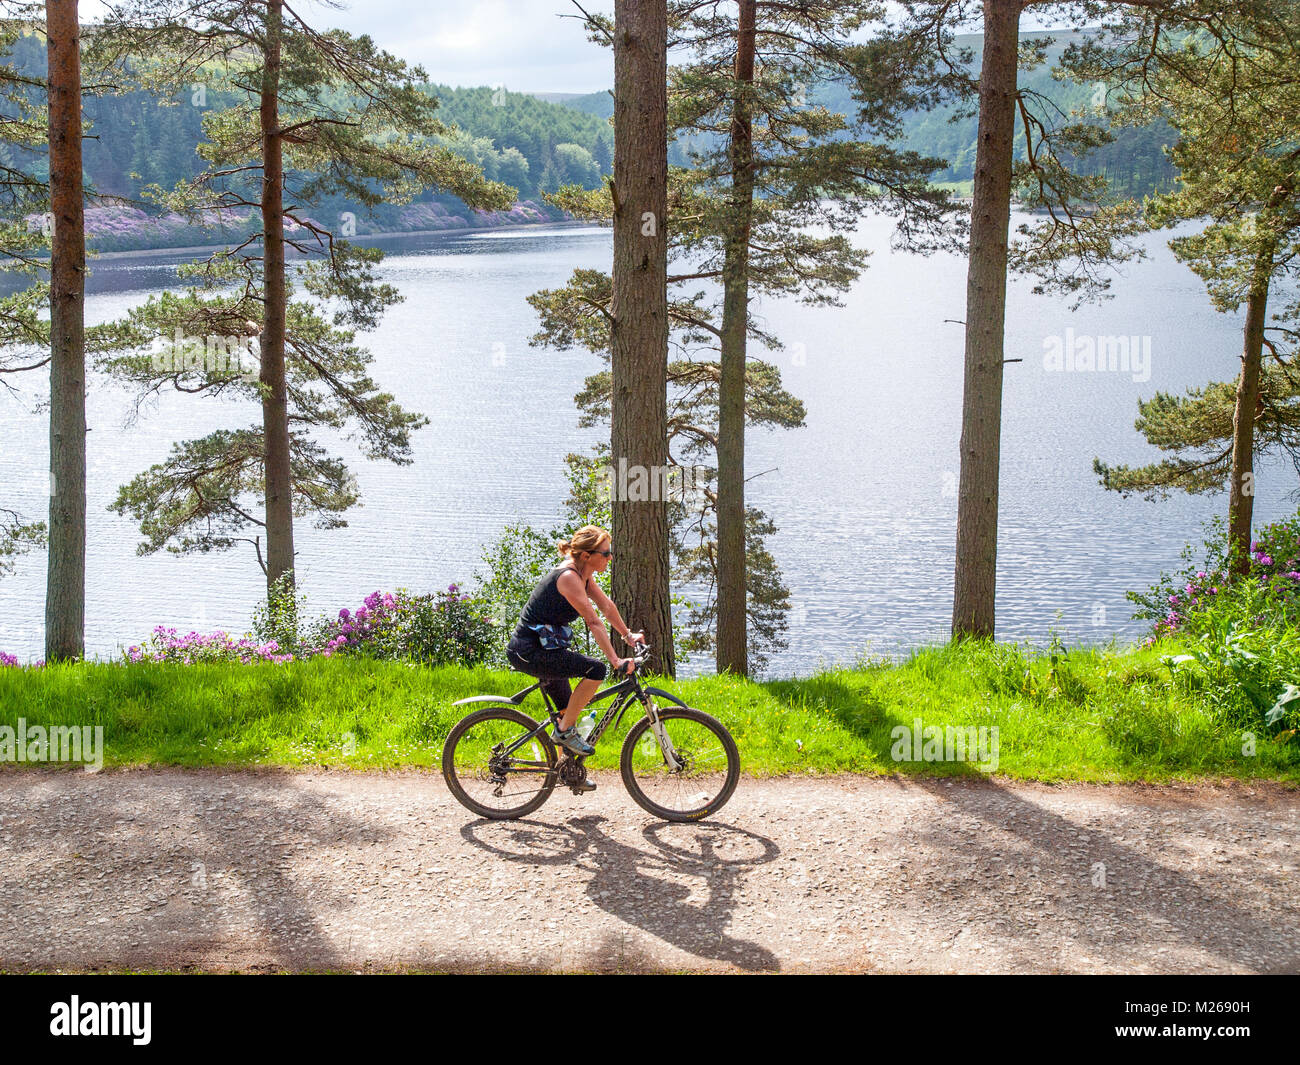 Equitación ciclista femenina en la vía alrededor de las represas Ladybower,Peak District National Park Foto de stock